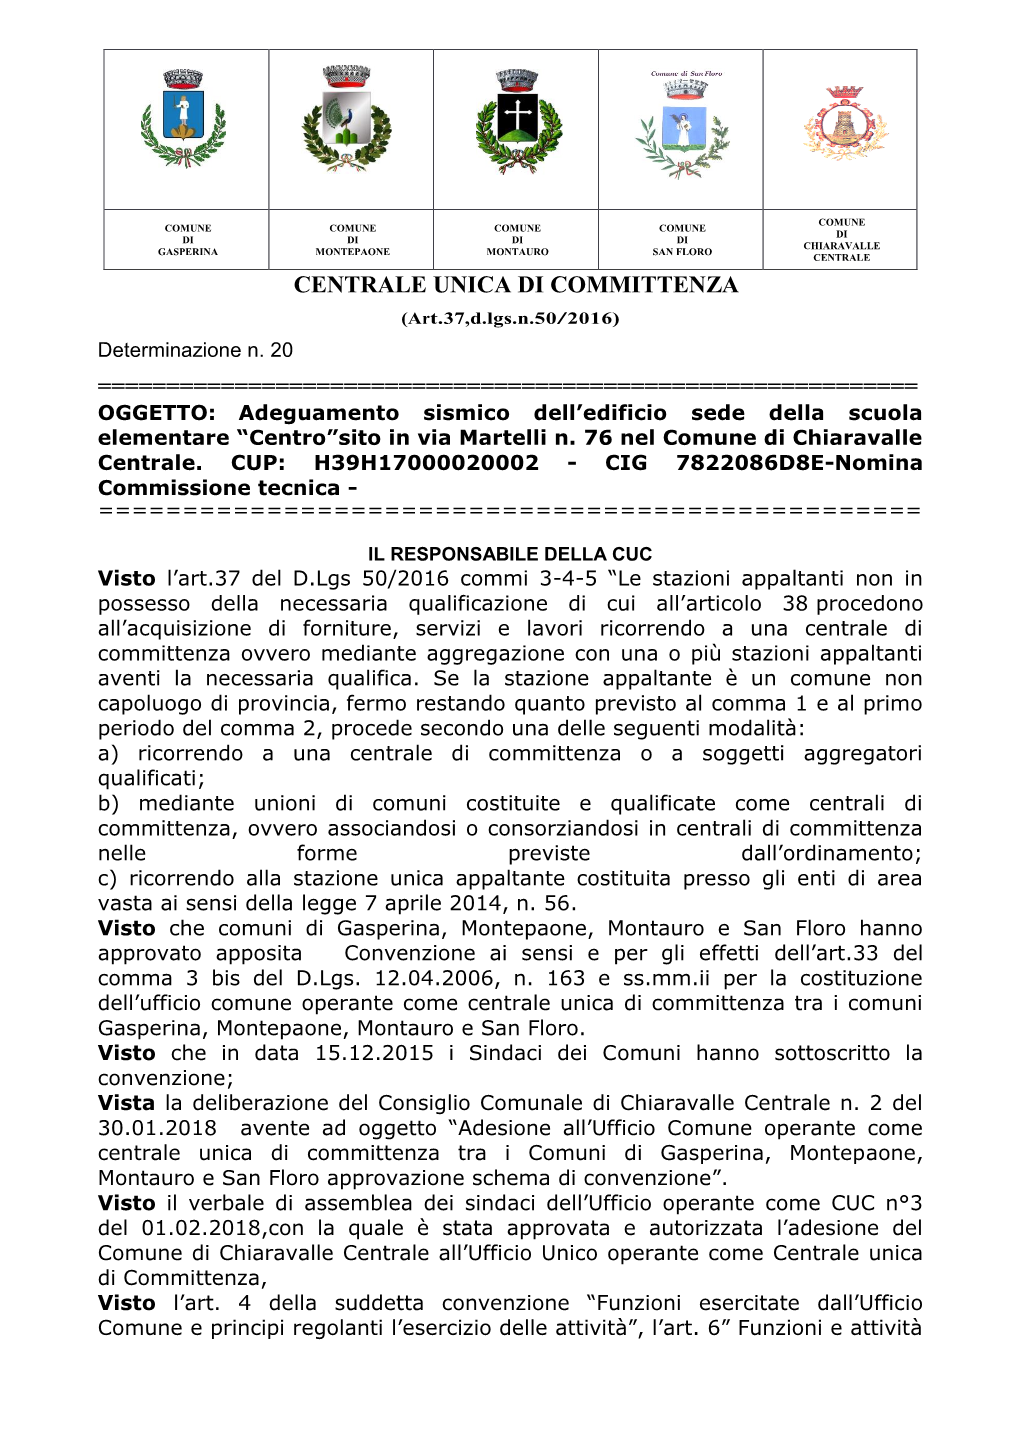 CENTRALE UNICA DI COMMITTENZA (Art.37,D.Lgs.N.50/2016) Determinazione N